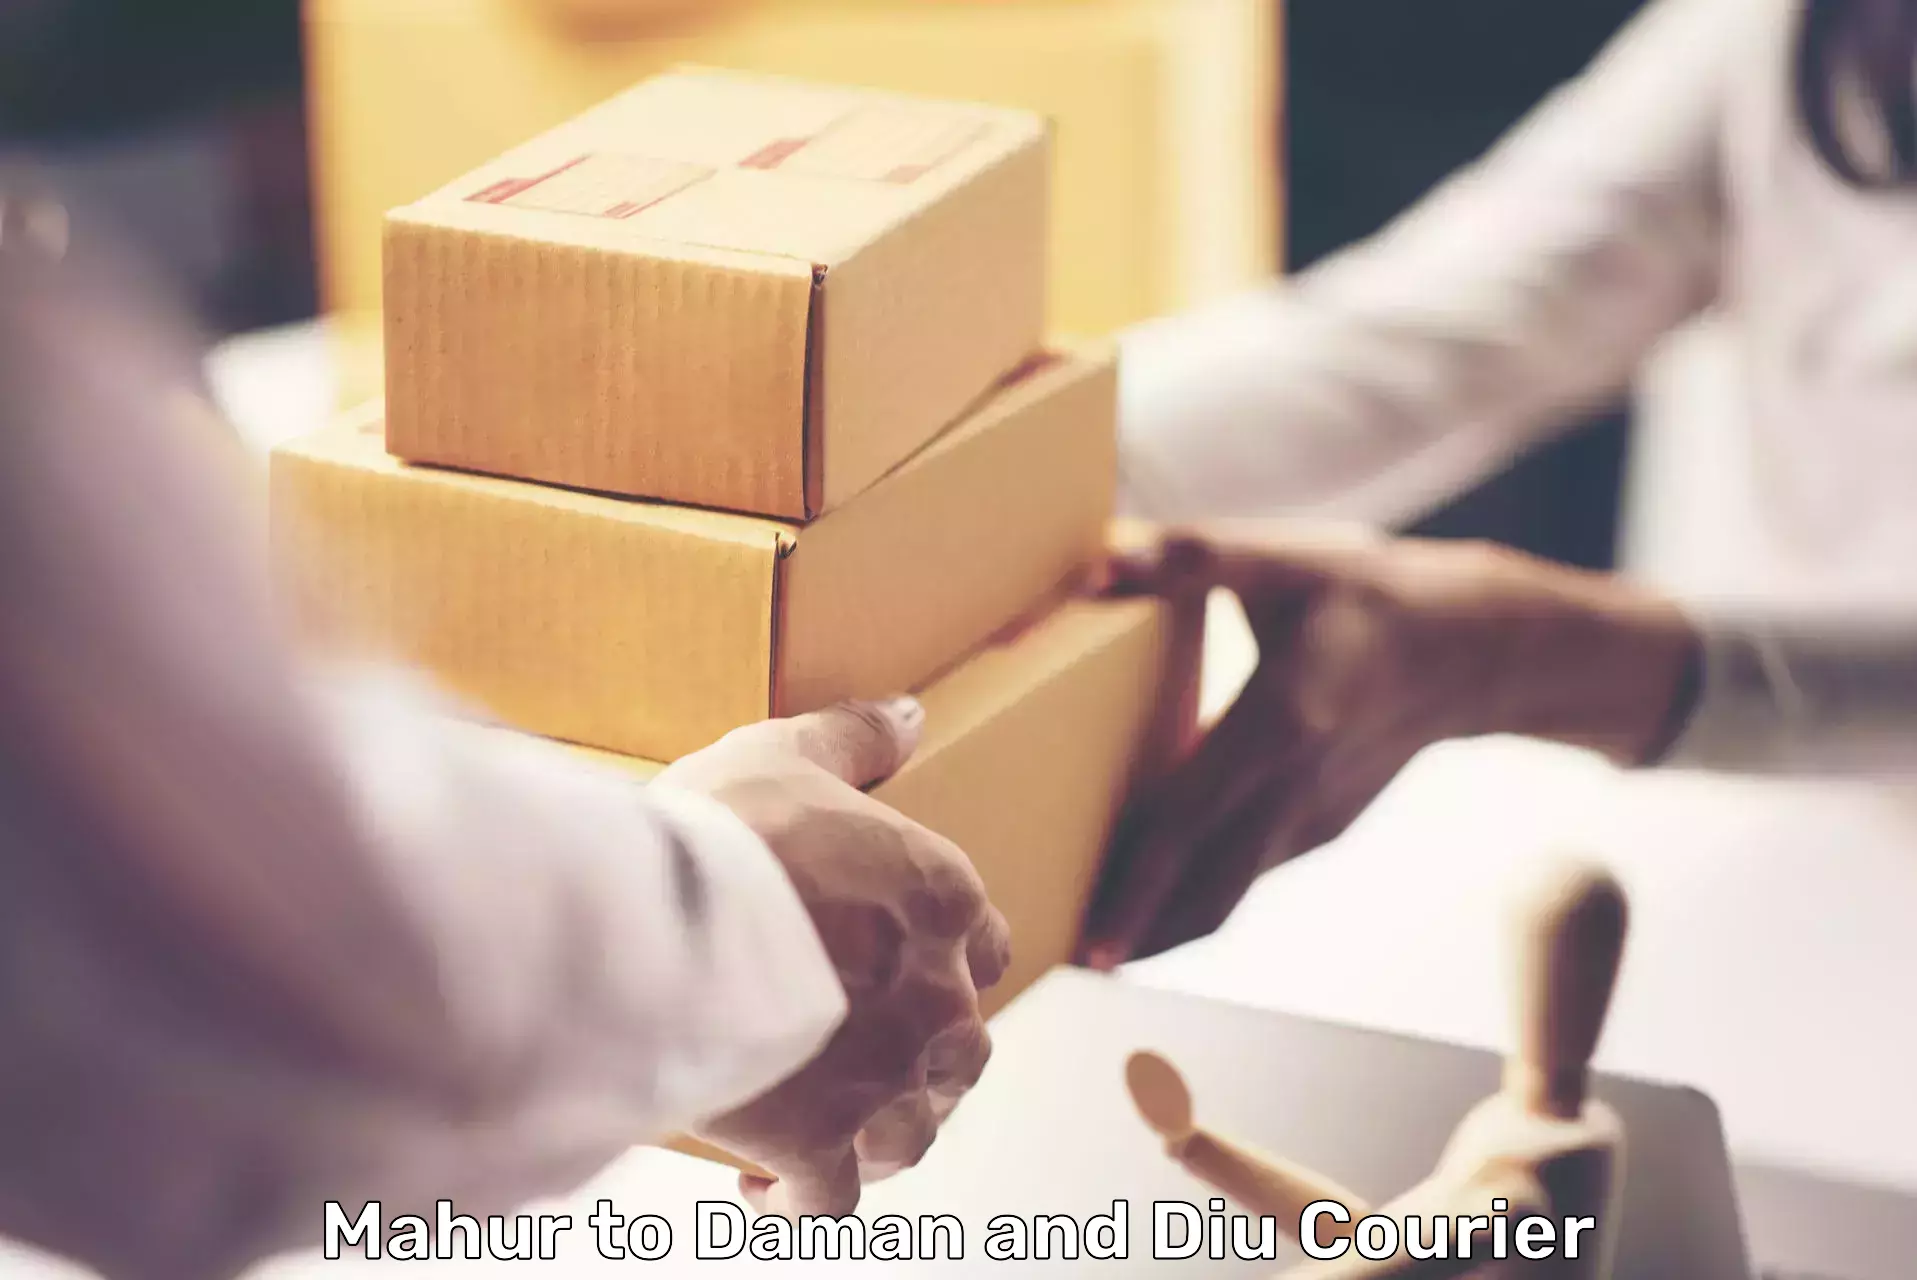 Flexible courier rates Mahur to Daman and Diu